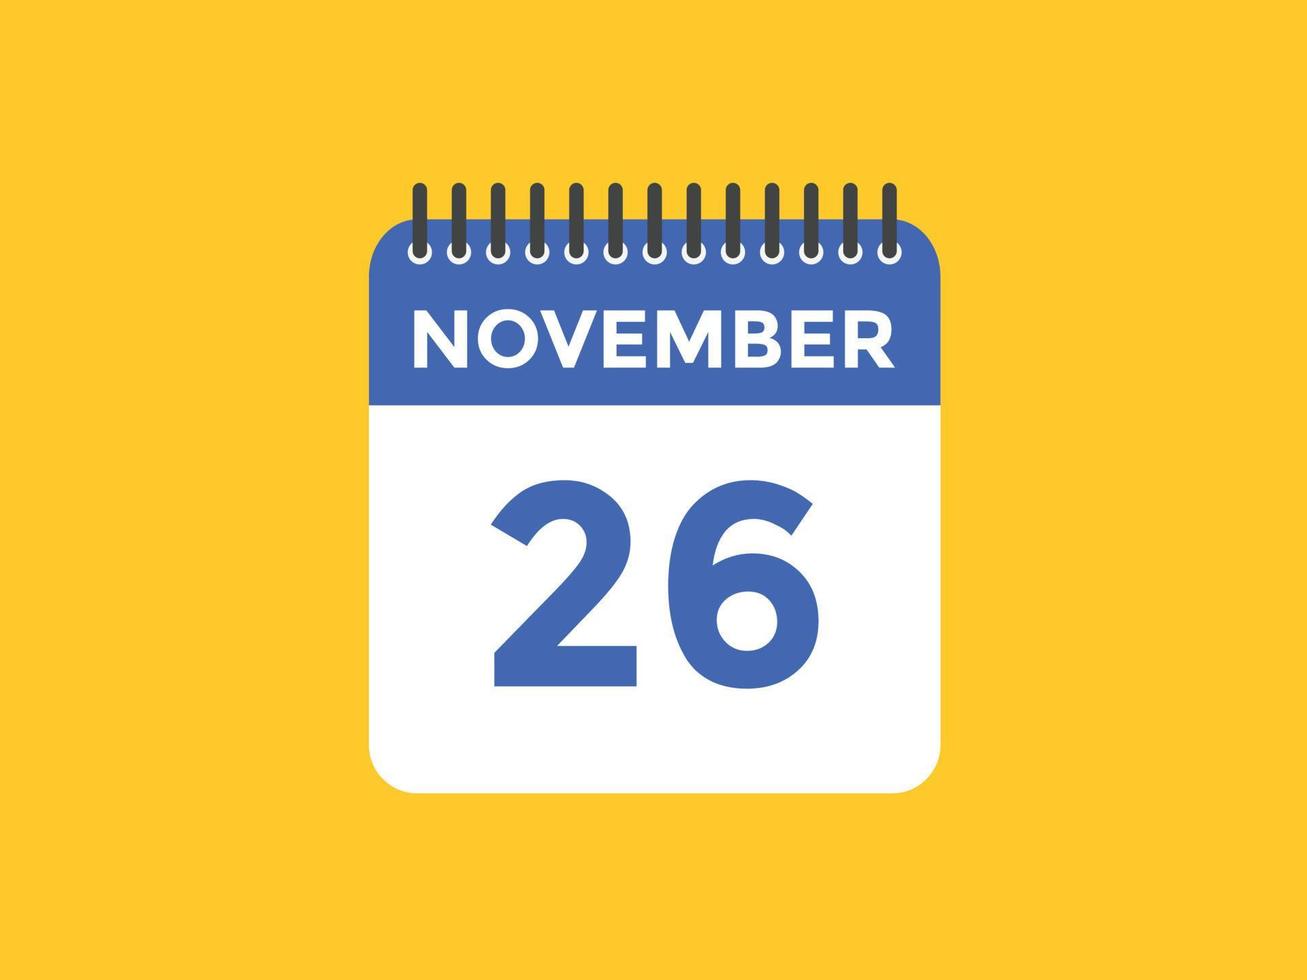 Recordatorio del calendario del 26 de noviembre. Plantilla de icono de calendario diario del 26 de noviembre. plantilla de diseño de icono de calendario 26 de noviembre. ilustración vectorial vector